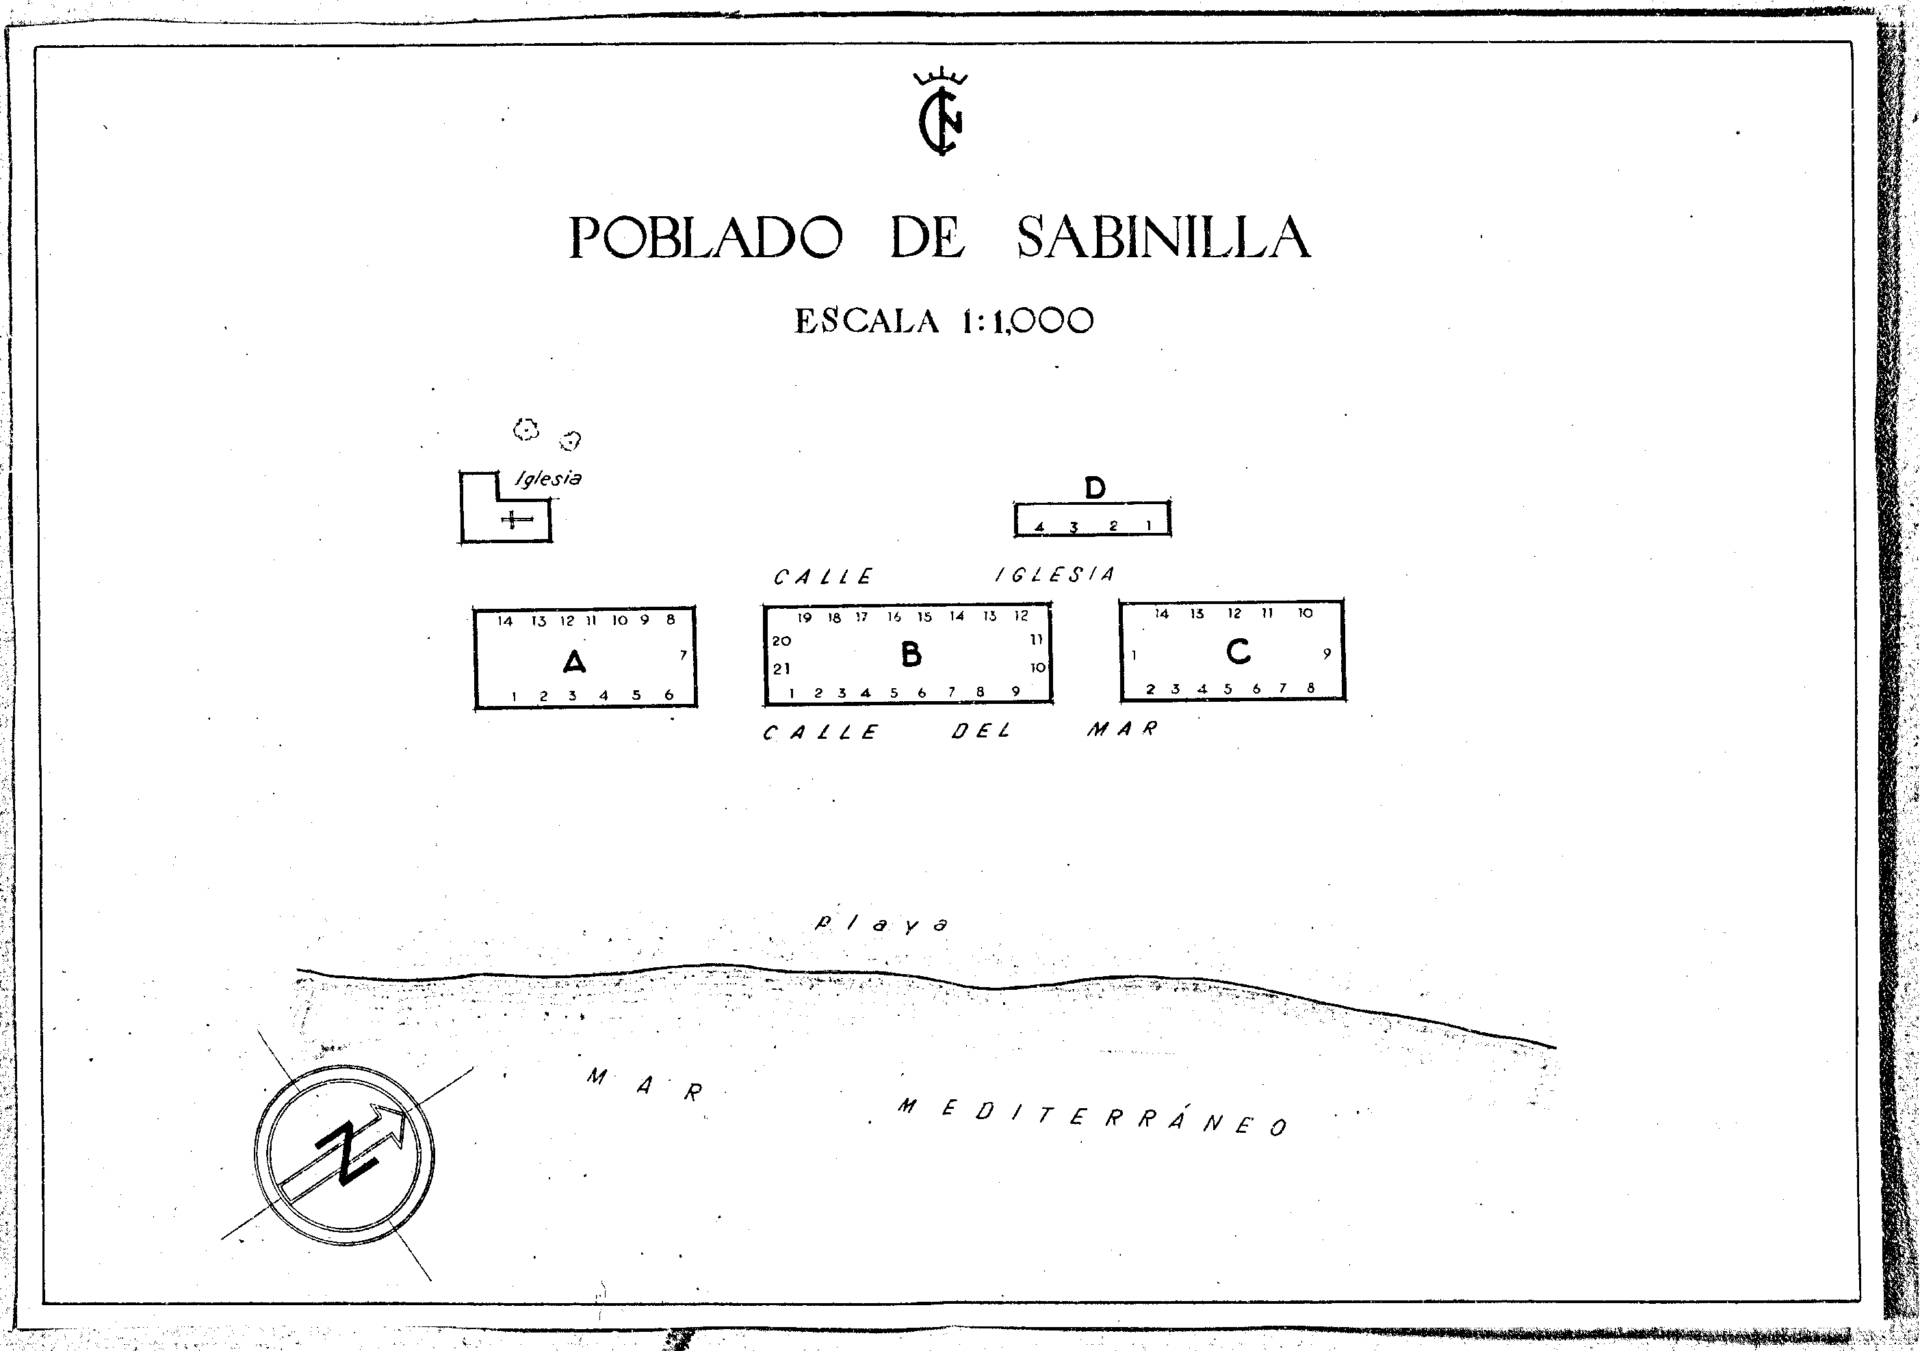 Poblado de Sabinilla. Instituto Nacional de Colonizacin